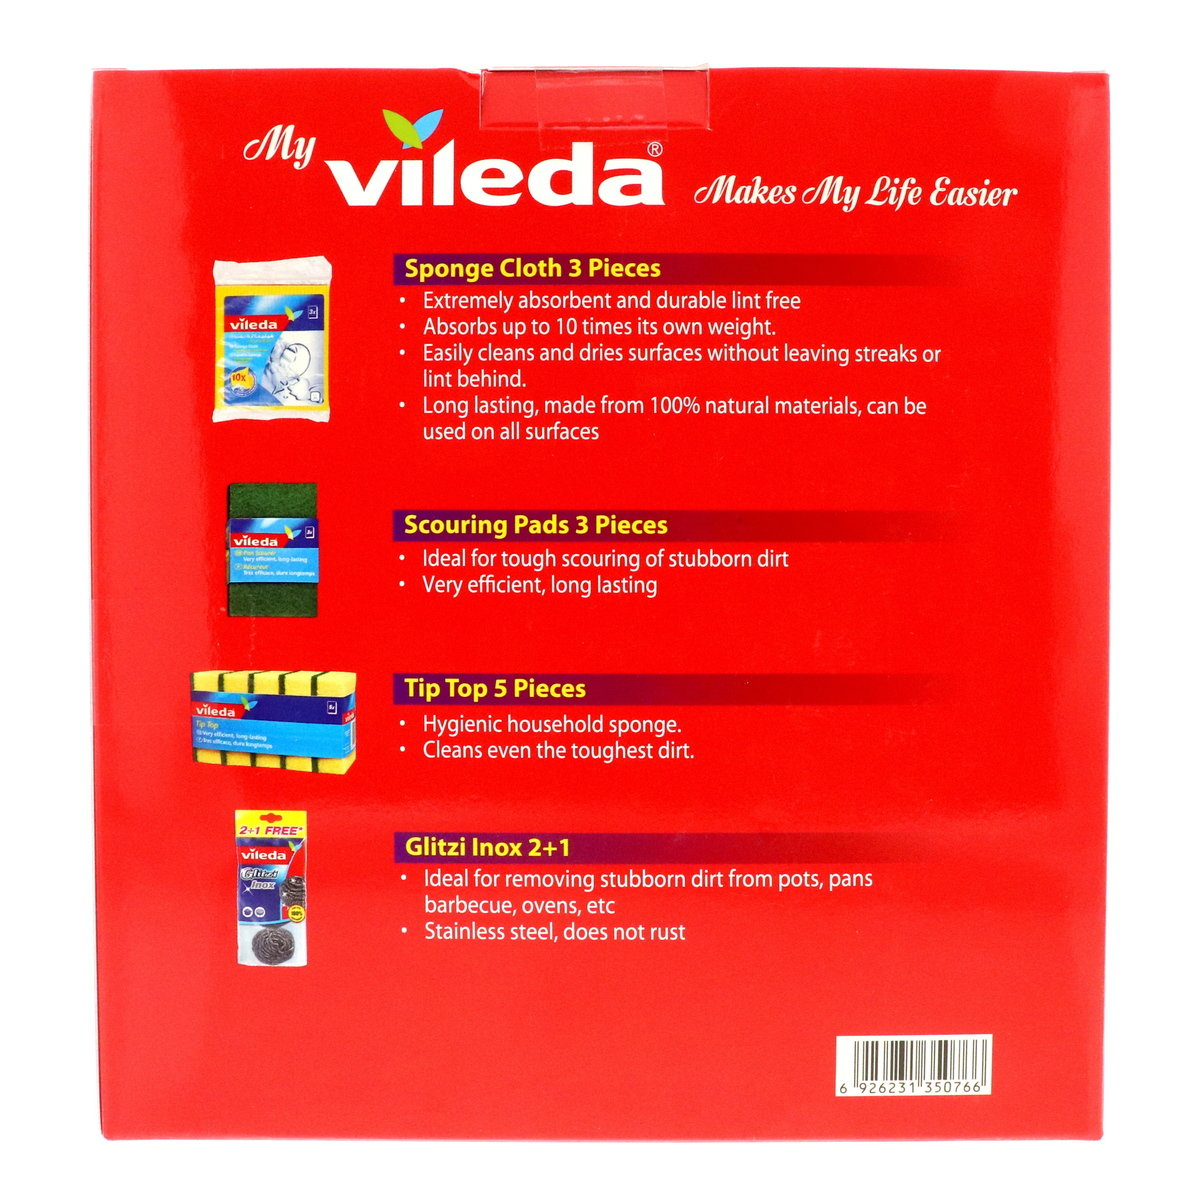 Villeda Sponge Cloth 3pcs + Scouring Pads 3pcs + Tip Top 5pcs + Glitzi Inox 3pcs